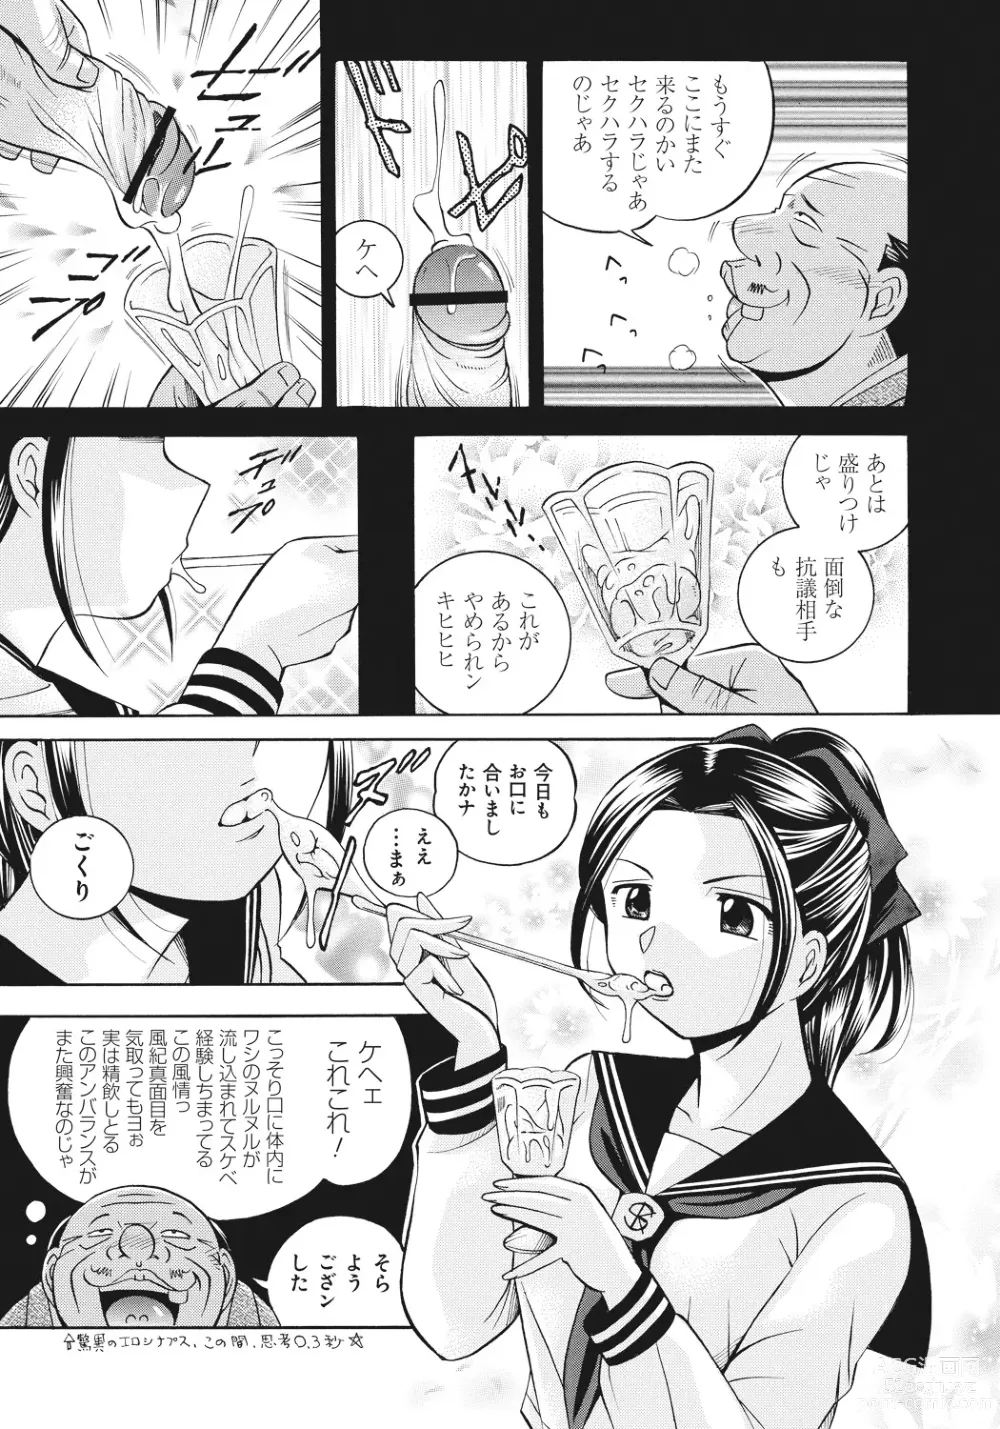 Page 10 of manga Student Council President Mitsuki